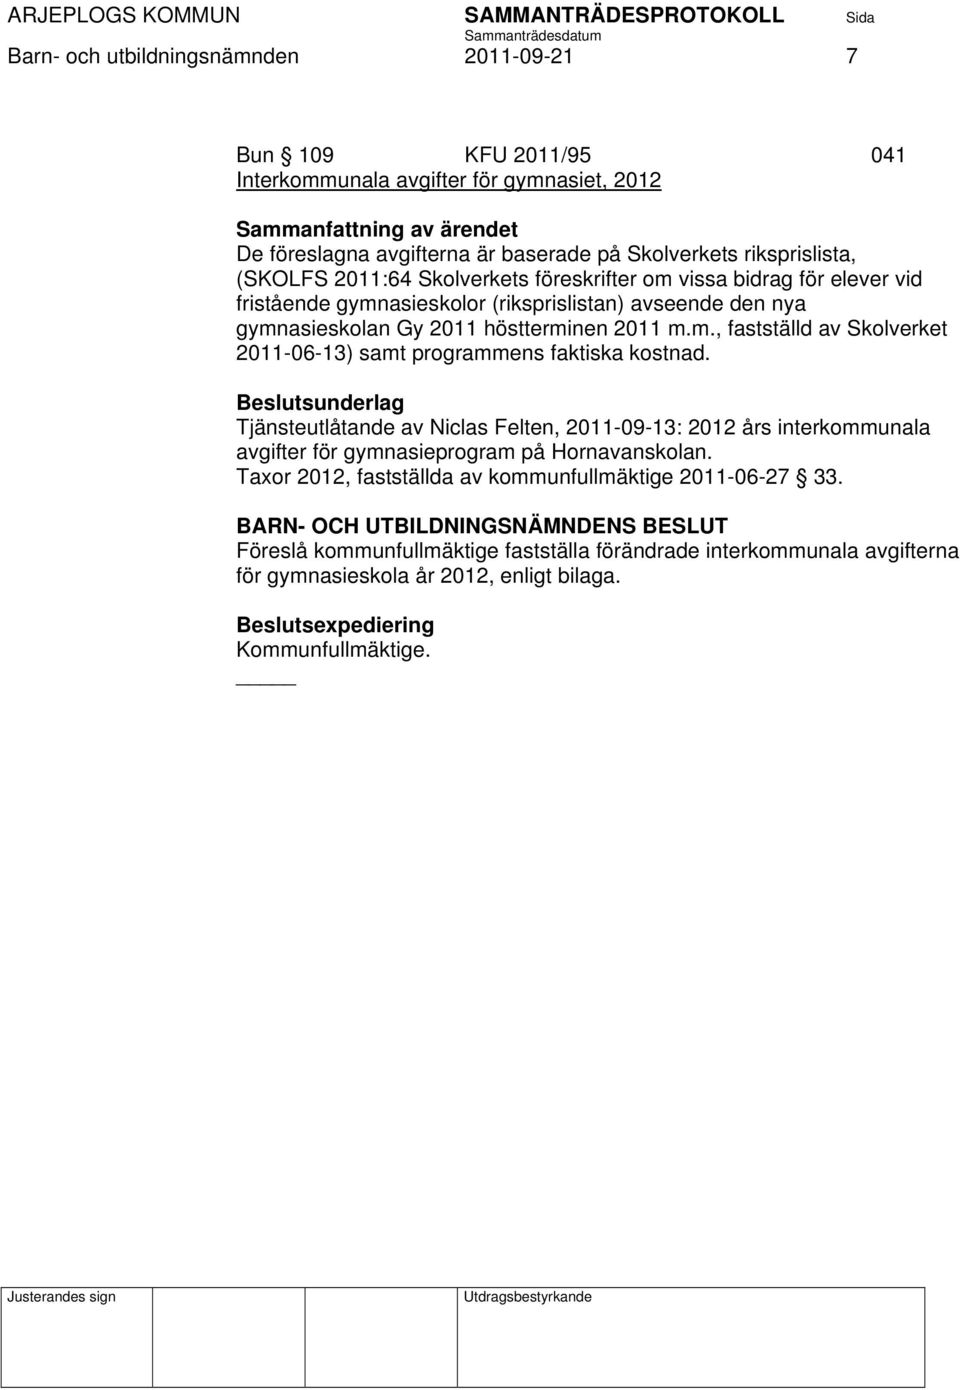 Tjänsteutlåtande av Niclas Felten, 2011-09-13: 2012 års interkommunala avgifter för gymnasieprogram på Hornavanskolan. Taxor 2012, fastställda av kommunfullmäktige 2011-06-27 33.